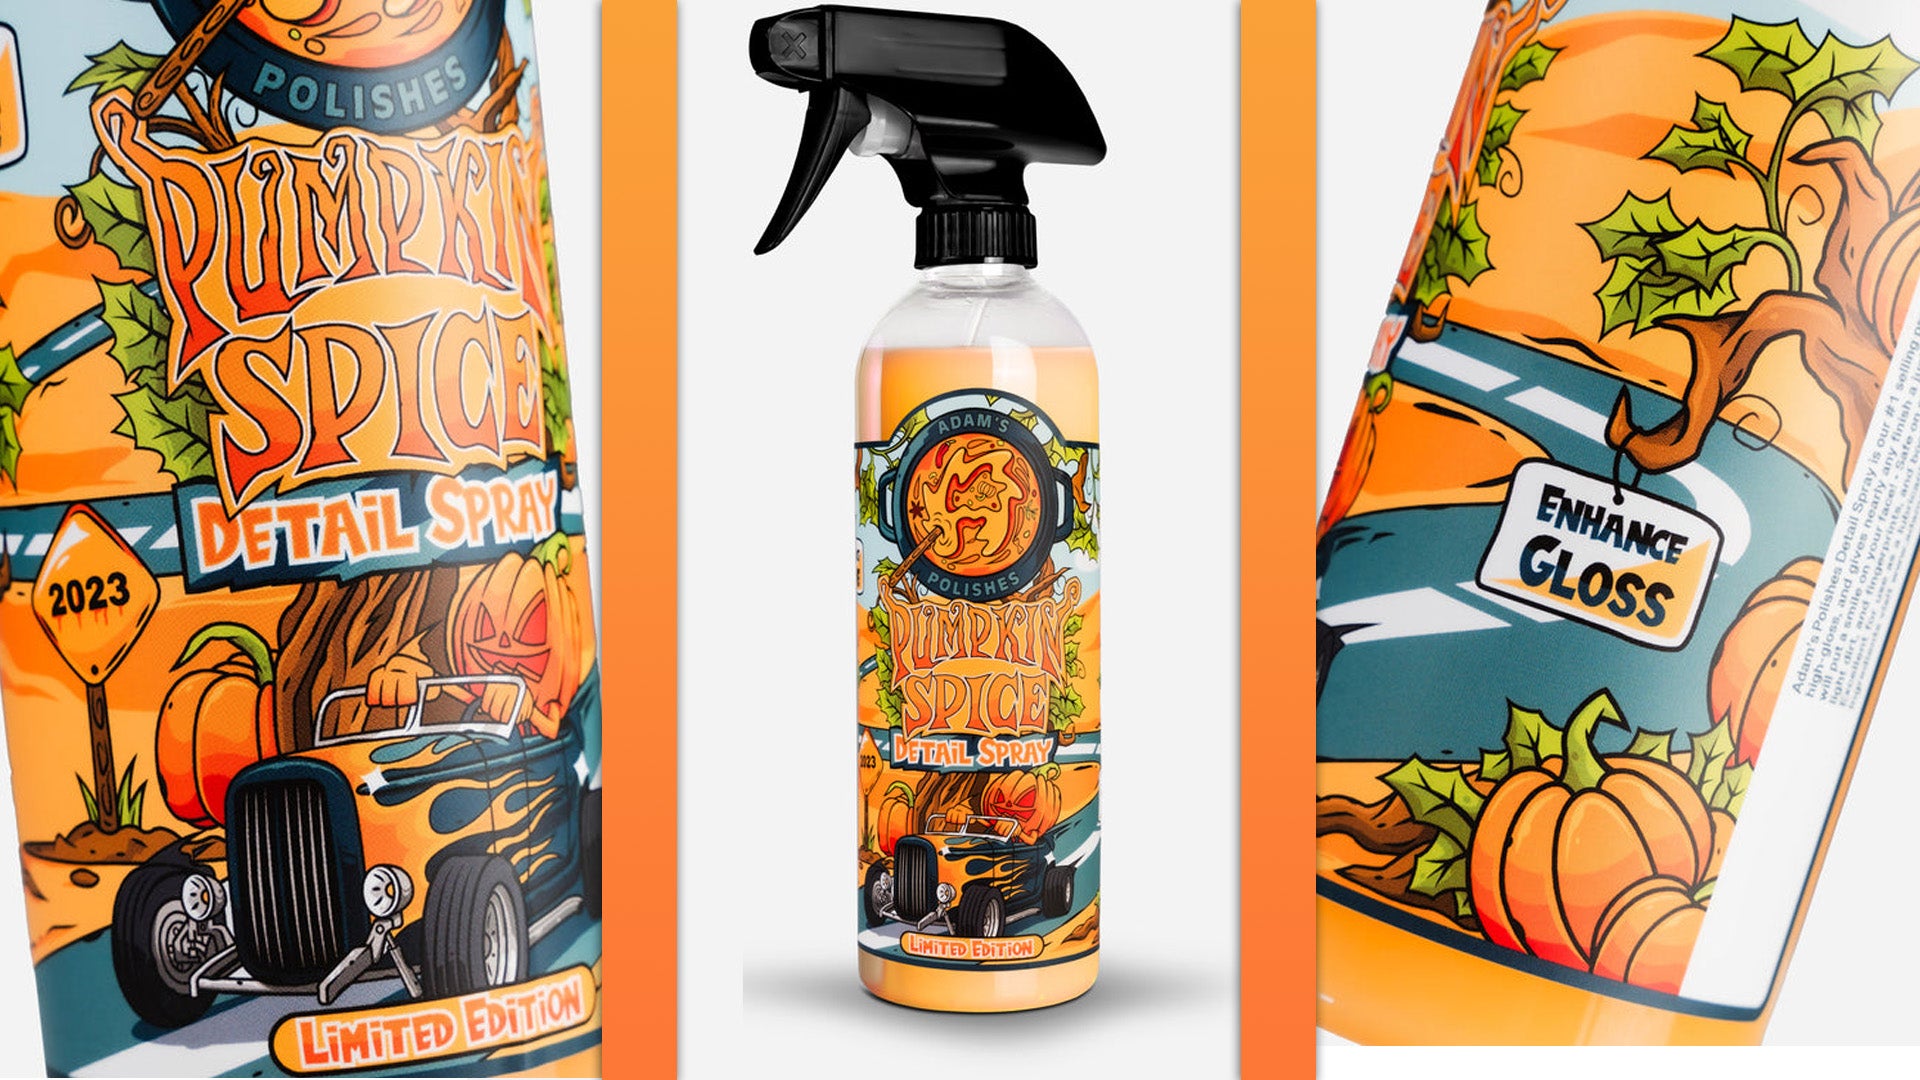 Pumpkin Spice Car-Detailing Spray is een product dat om de een of andere reden bestaat